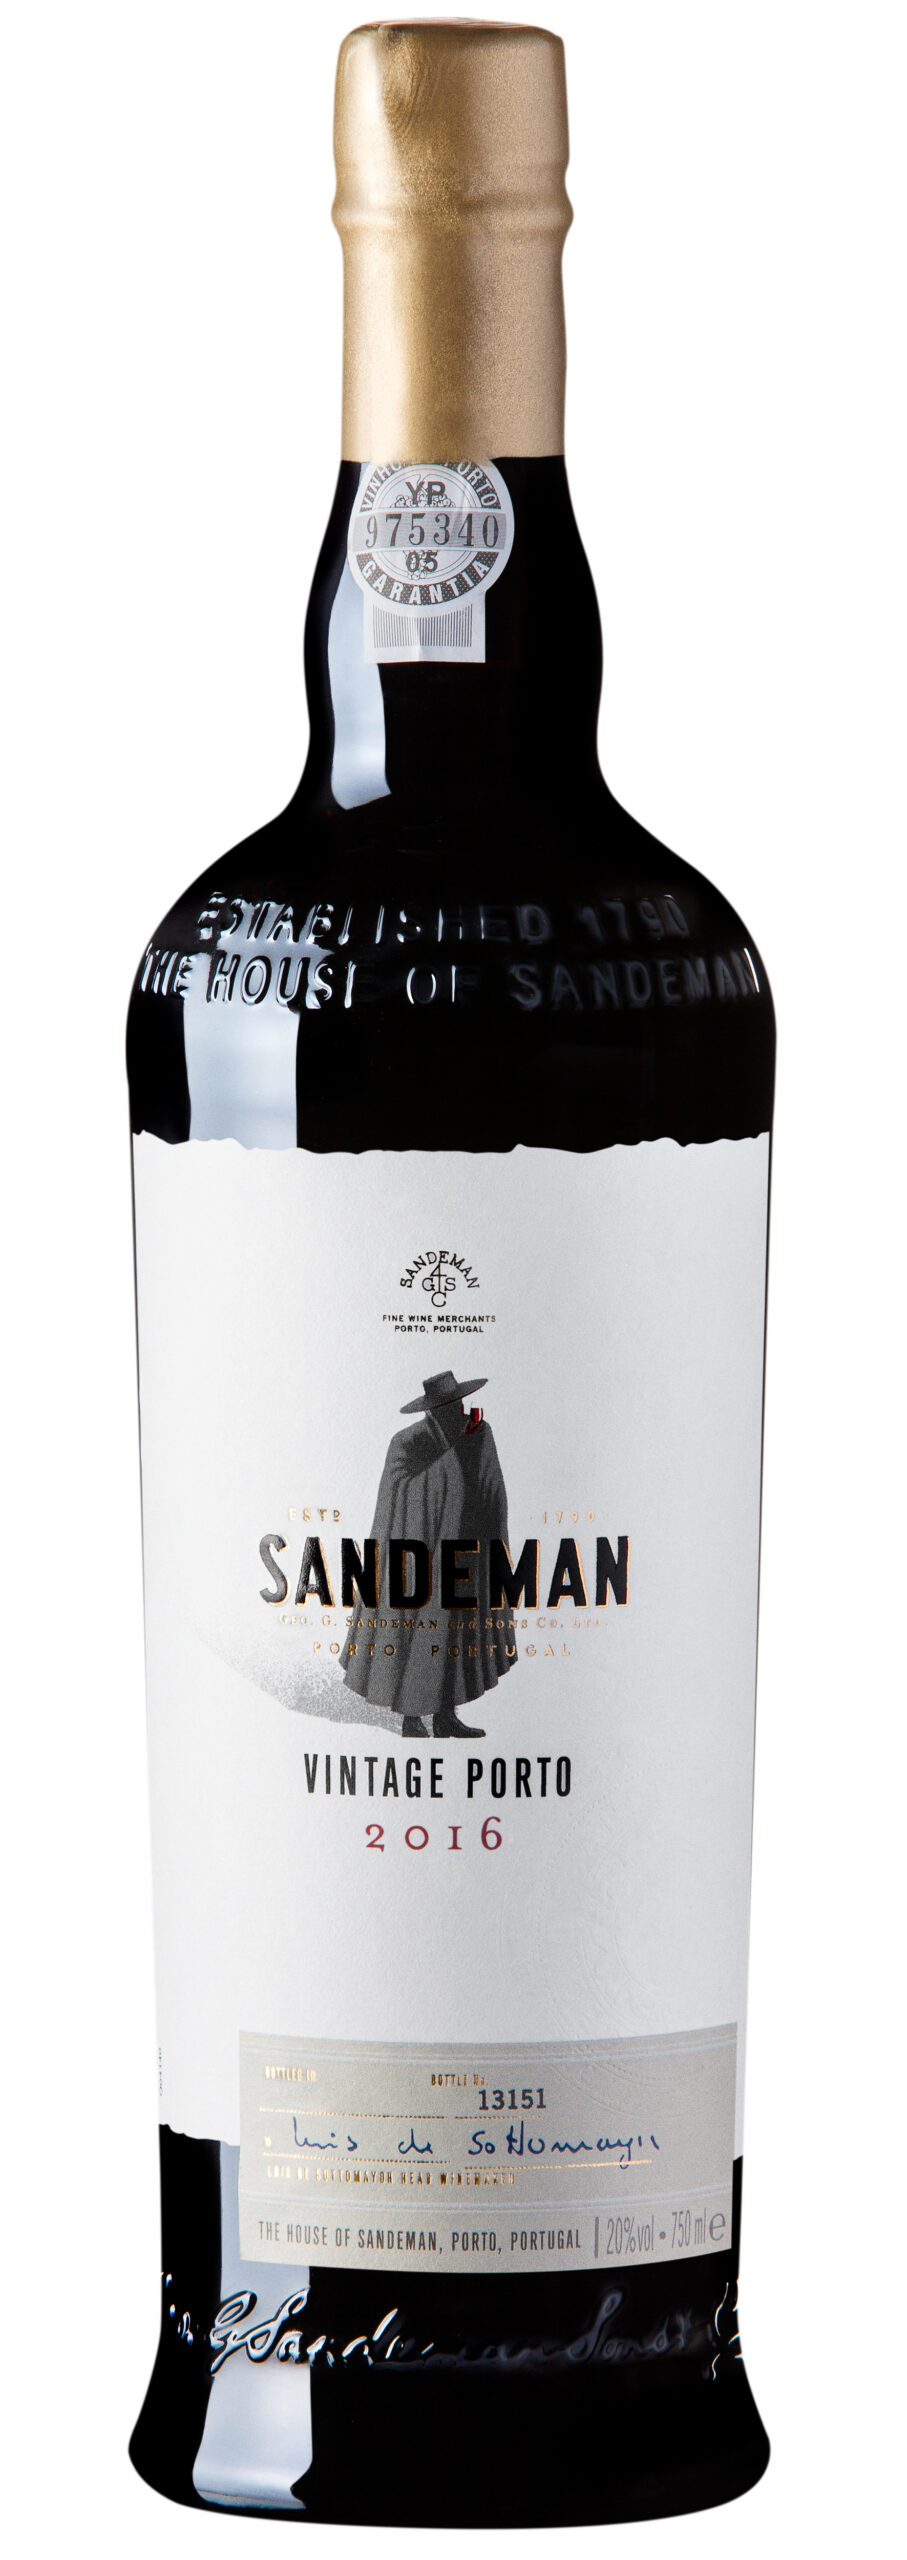 Sandeman Vintage 2016 scaled